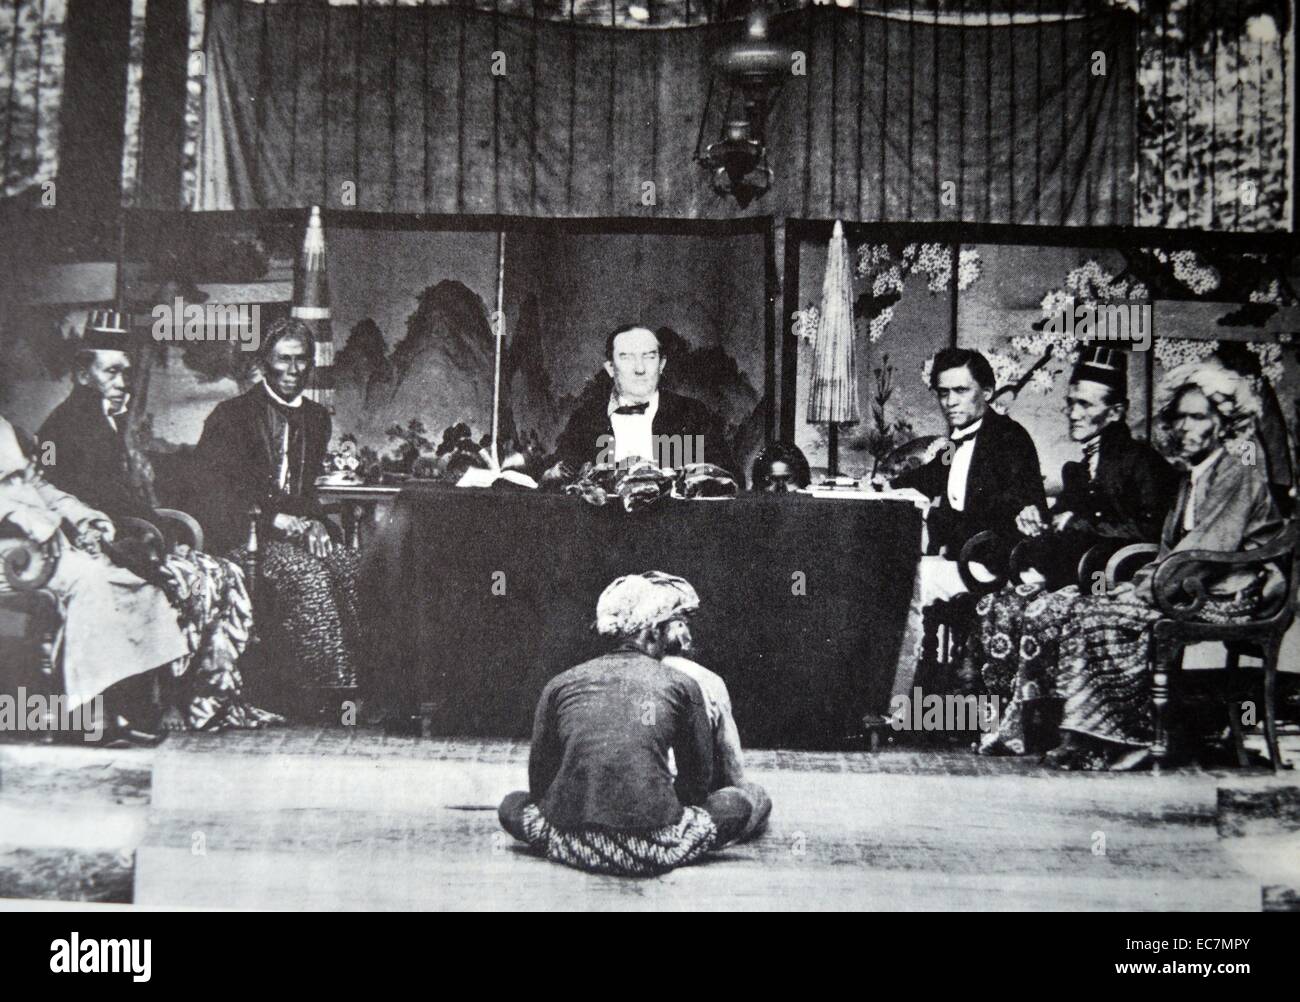 Testversion von einem niederländischen kolonialen Gericht in Indonesien von ein Mann Stockfoto